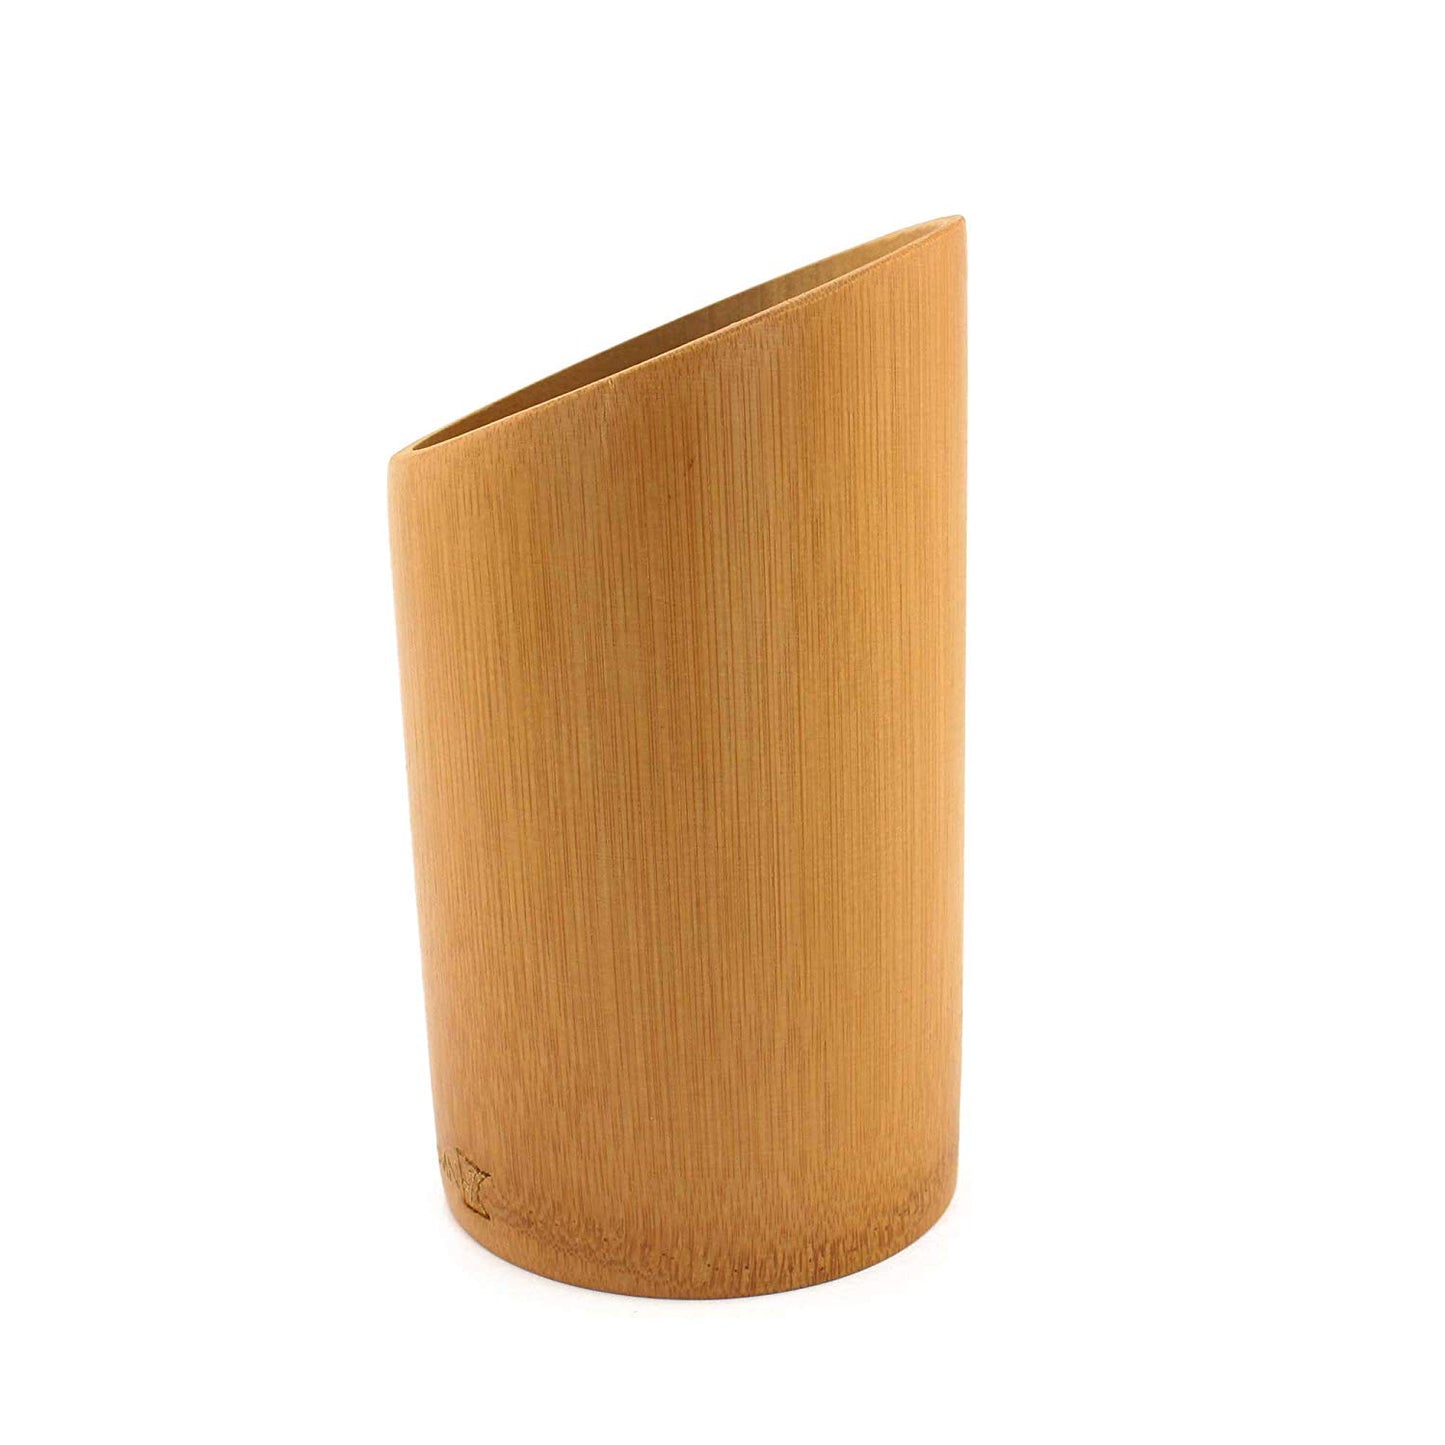 Bamboo Kitchen Cutlery Holder- 1 Piece